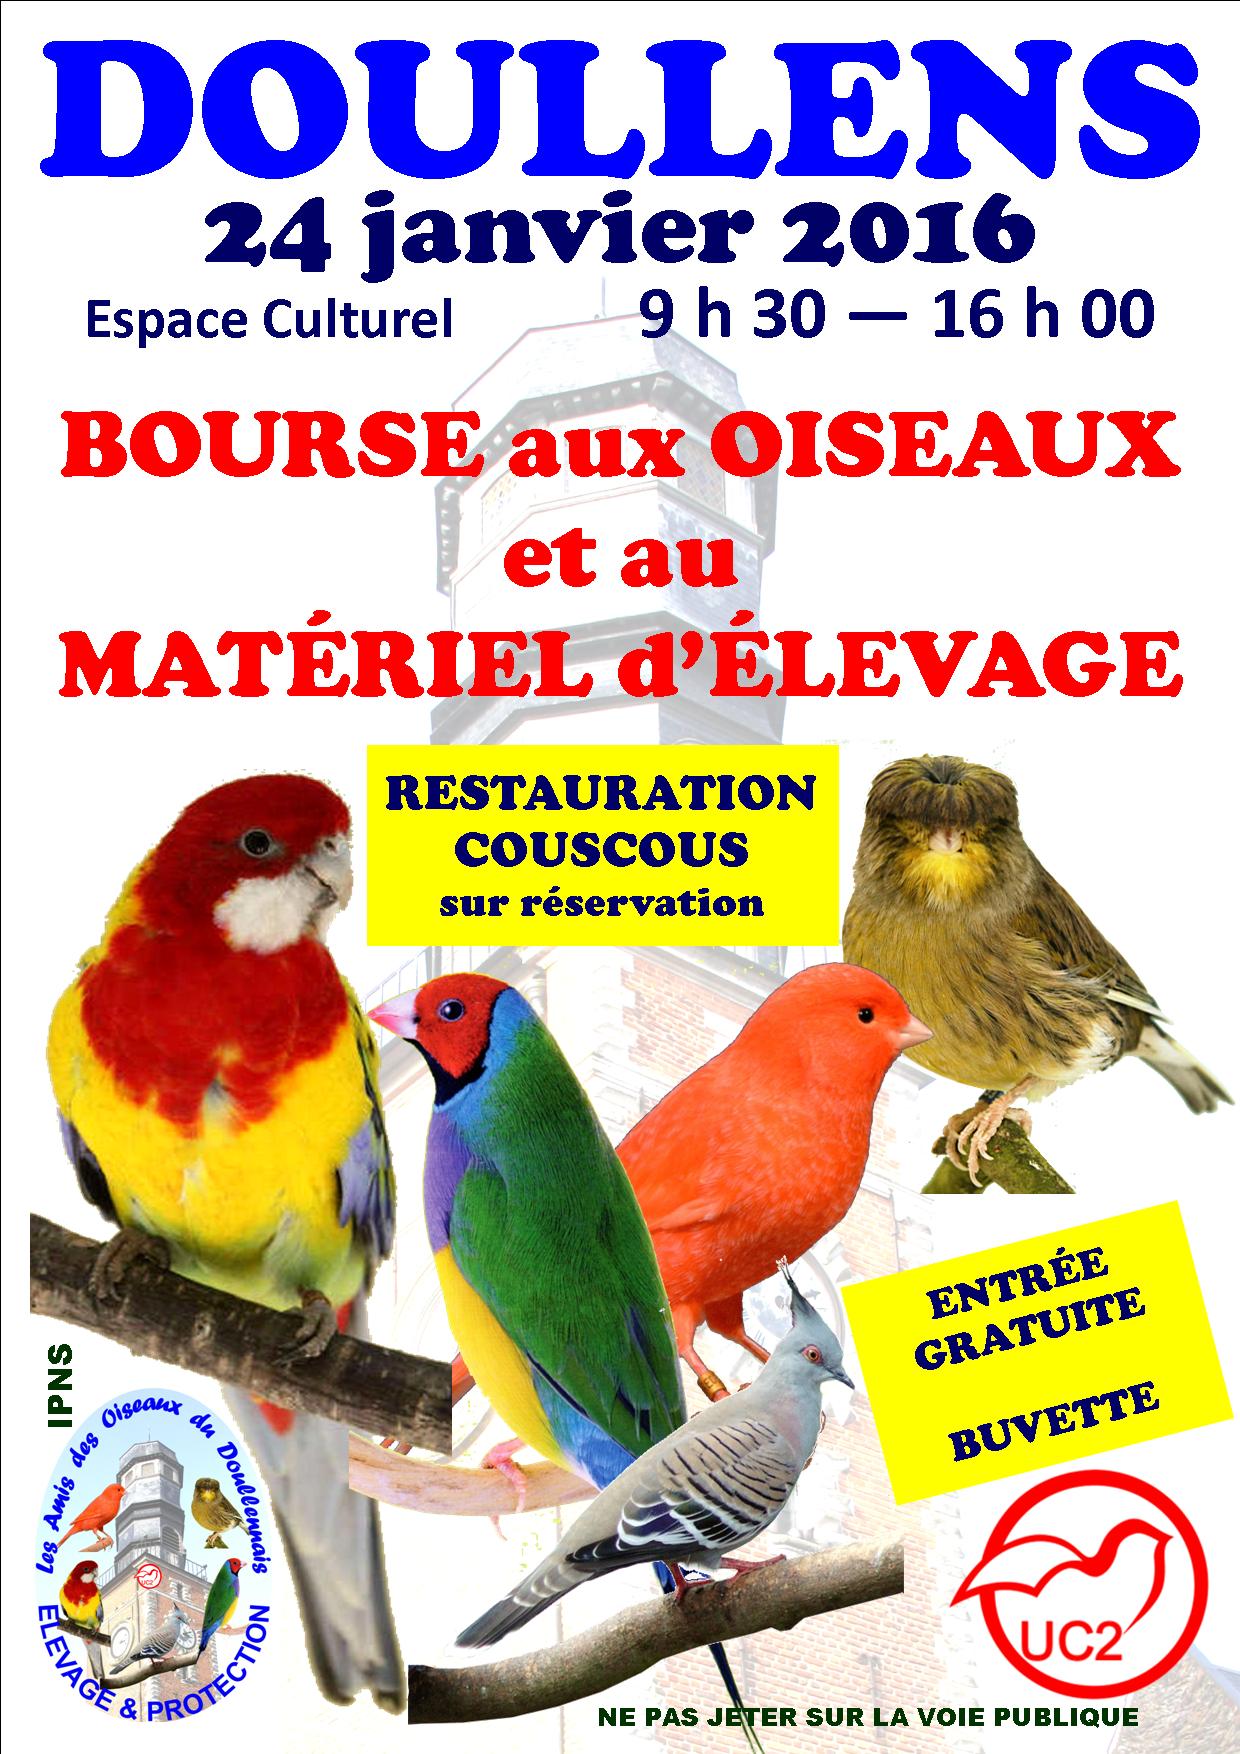 BOURSE AUX OISEAUX et MATERIEL D'ELEVAGE - DOULLENS 24.01.2016 BOURSE 24 JANVIER